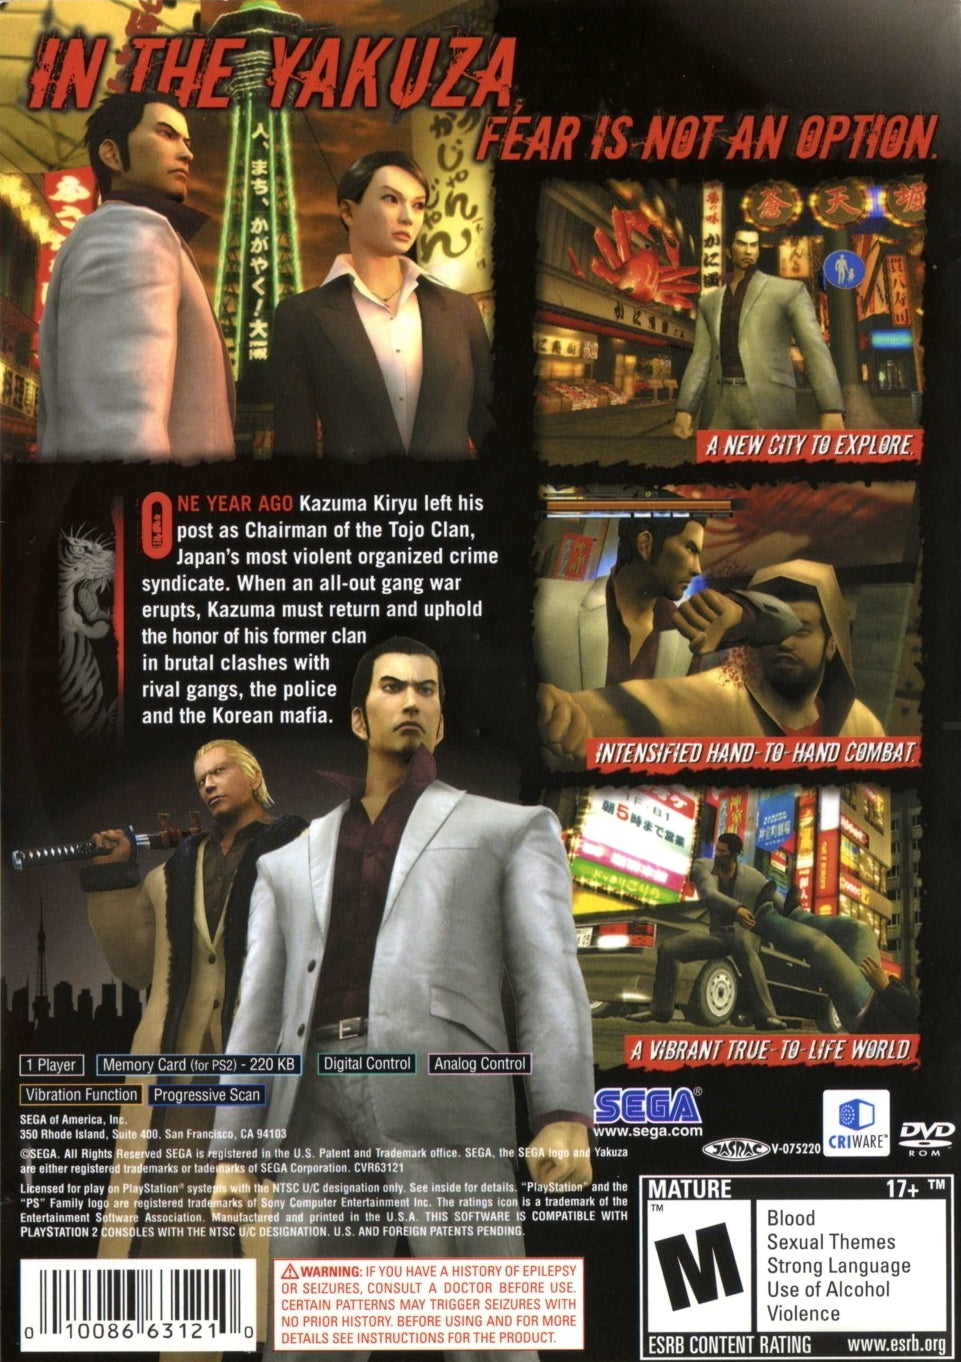 Yakuza 2 - (PS2) PlayStation 2 Video Games Sega   